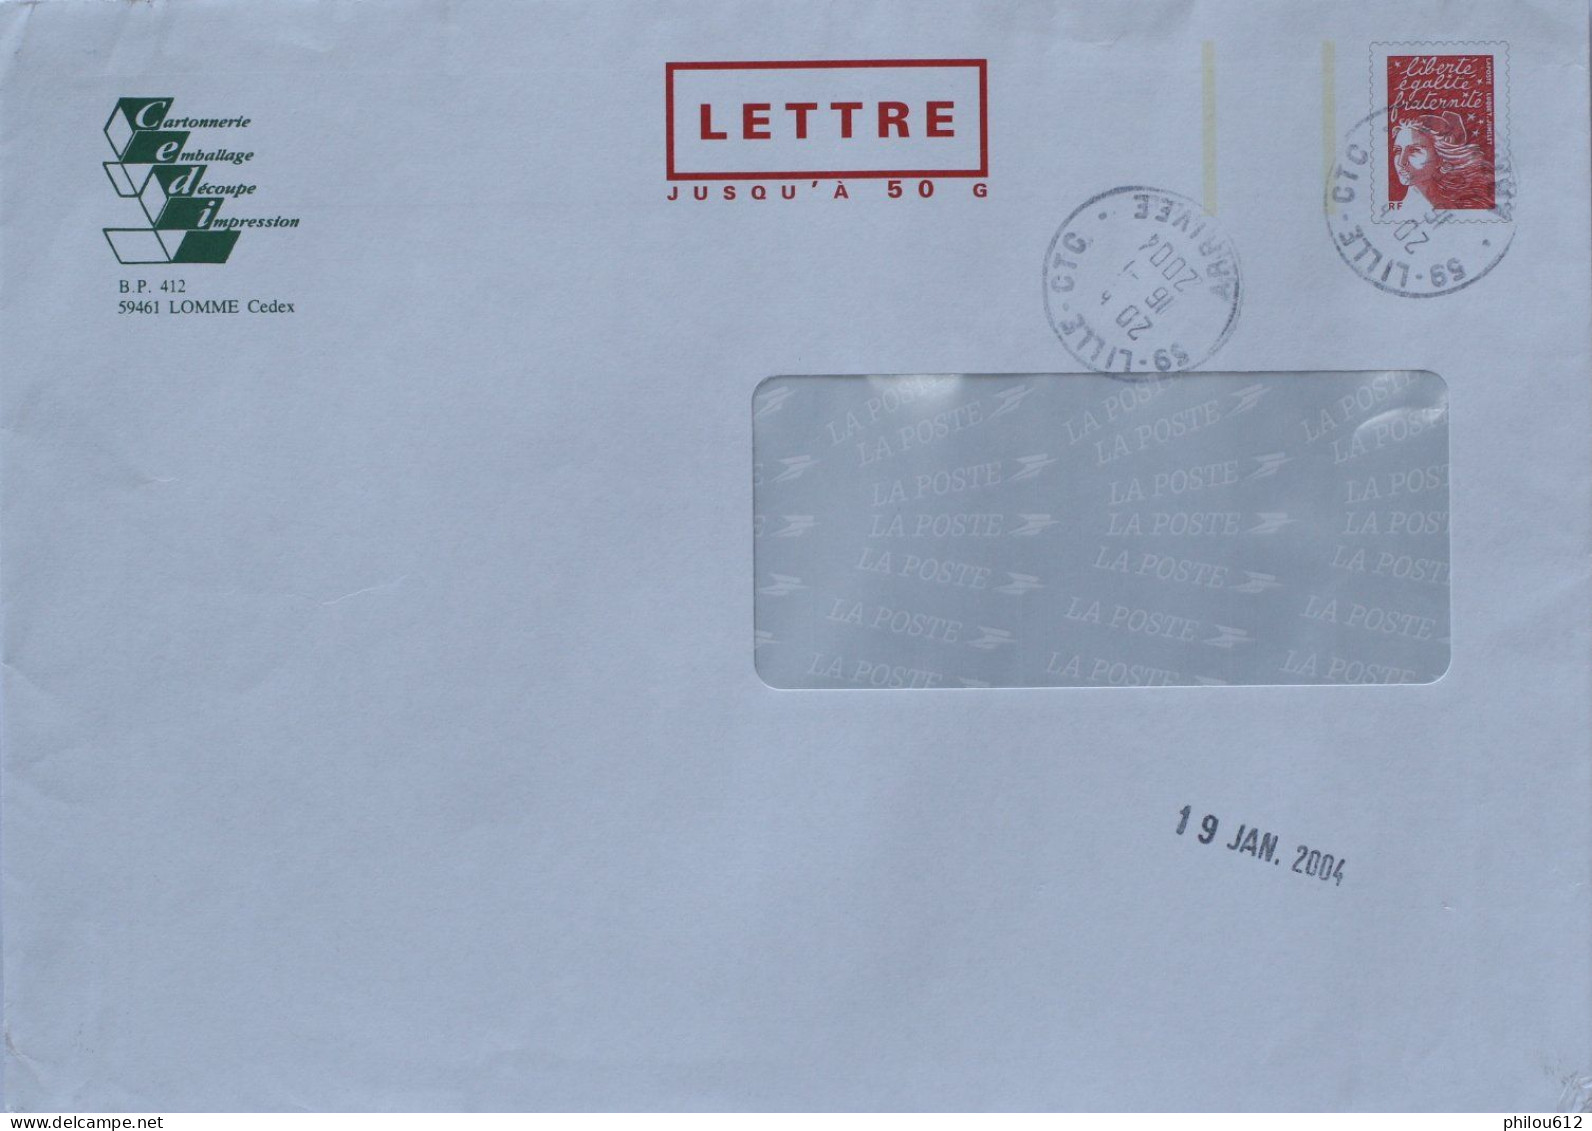 59 - Lomme -  PAP Repiquage Cartonnerie CEDI - Lettre 50G Avec Fenêtre - Obl Man Lille - 2004 - PAP : Antwoord /Luquet